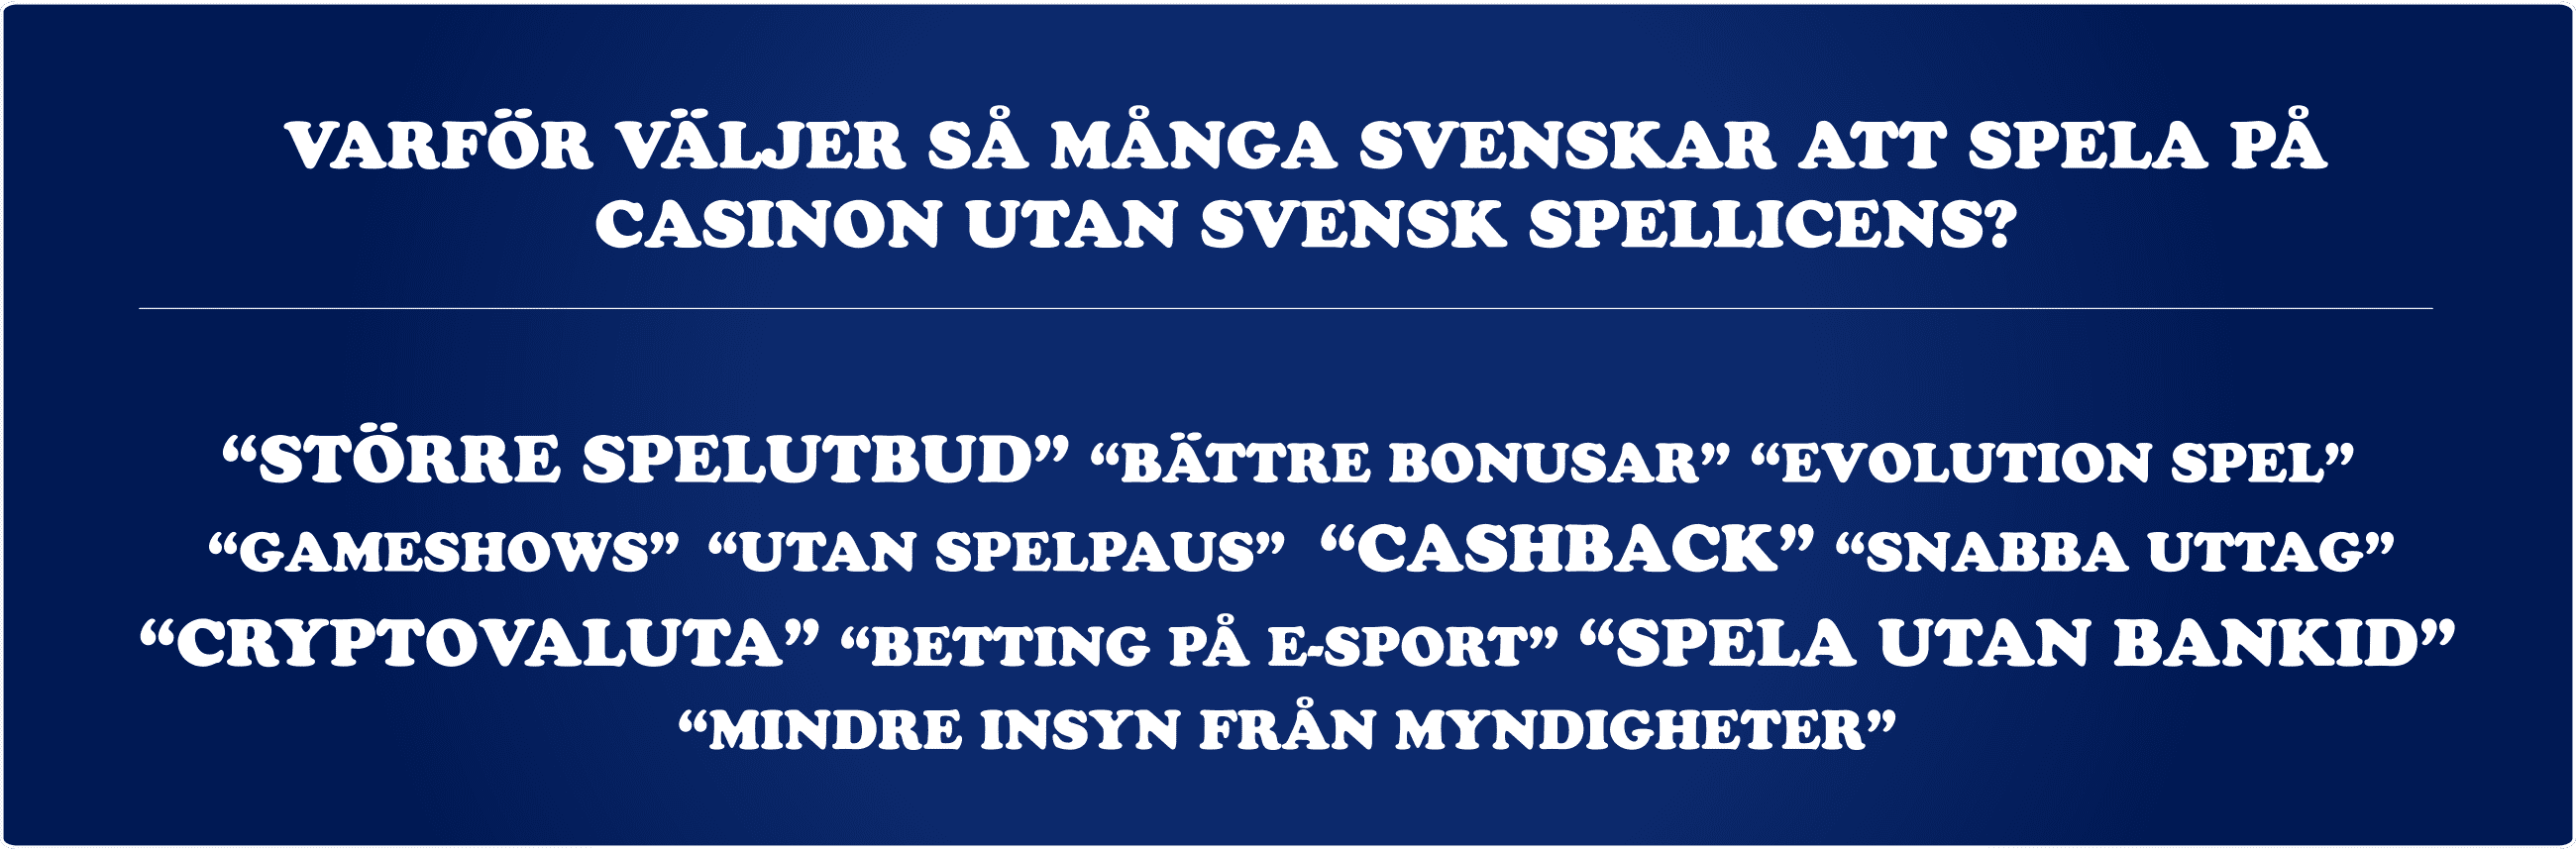 varför casino utan svensk licens